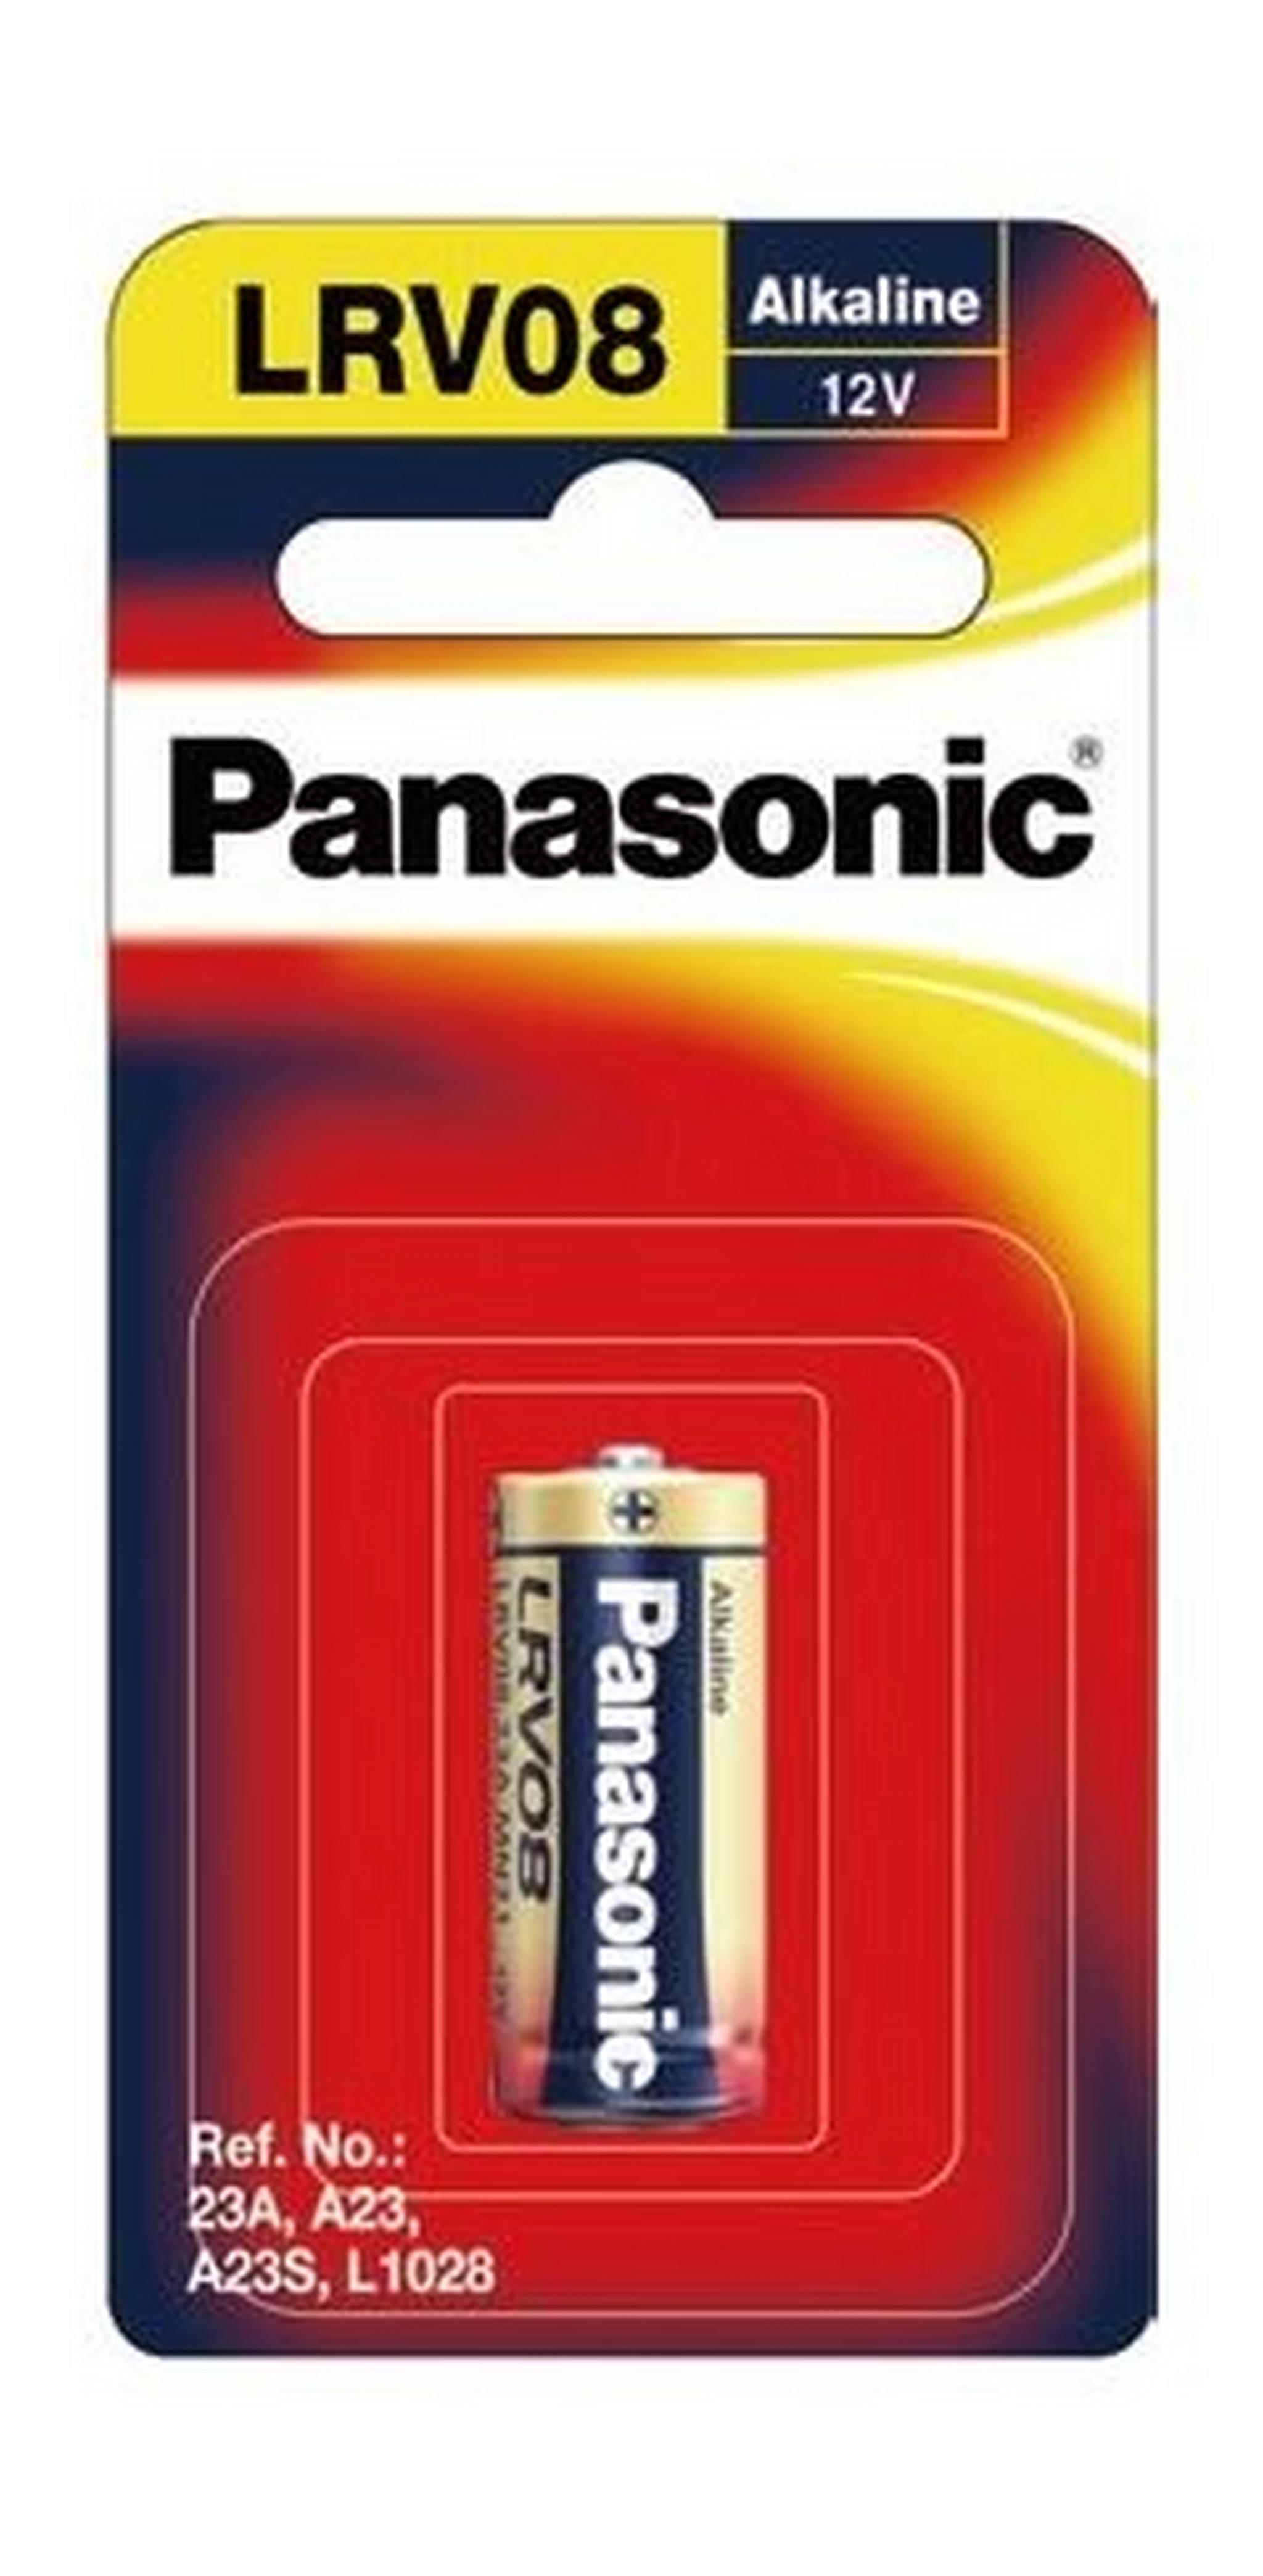 Panasonic  Alkaline Battery - Pack of 1 (LR-V08/1BPA)